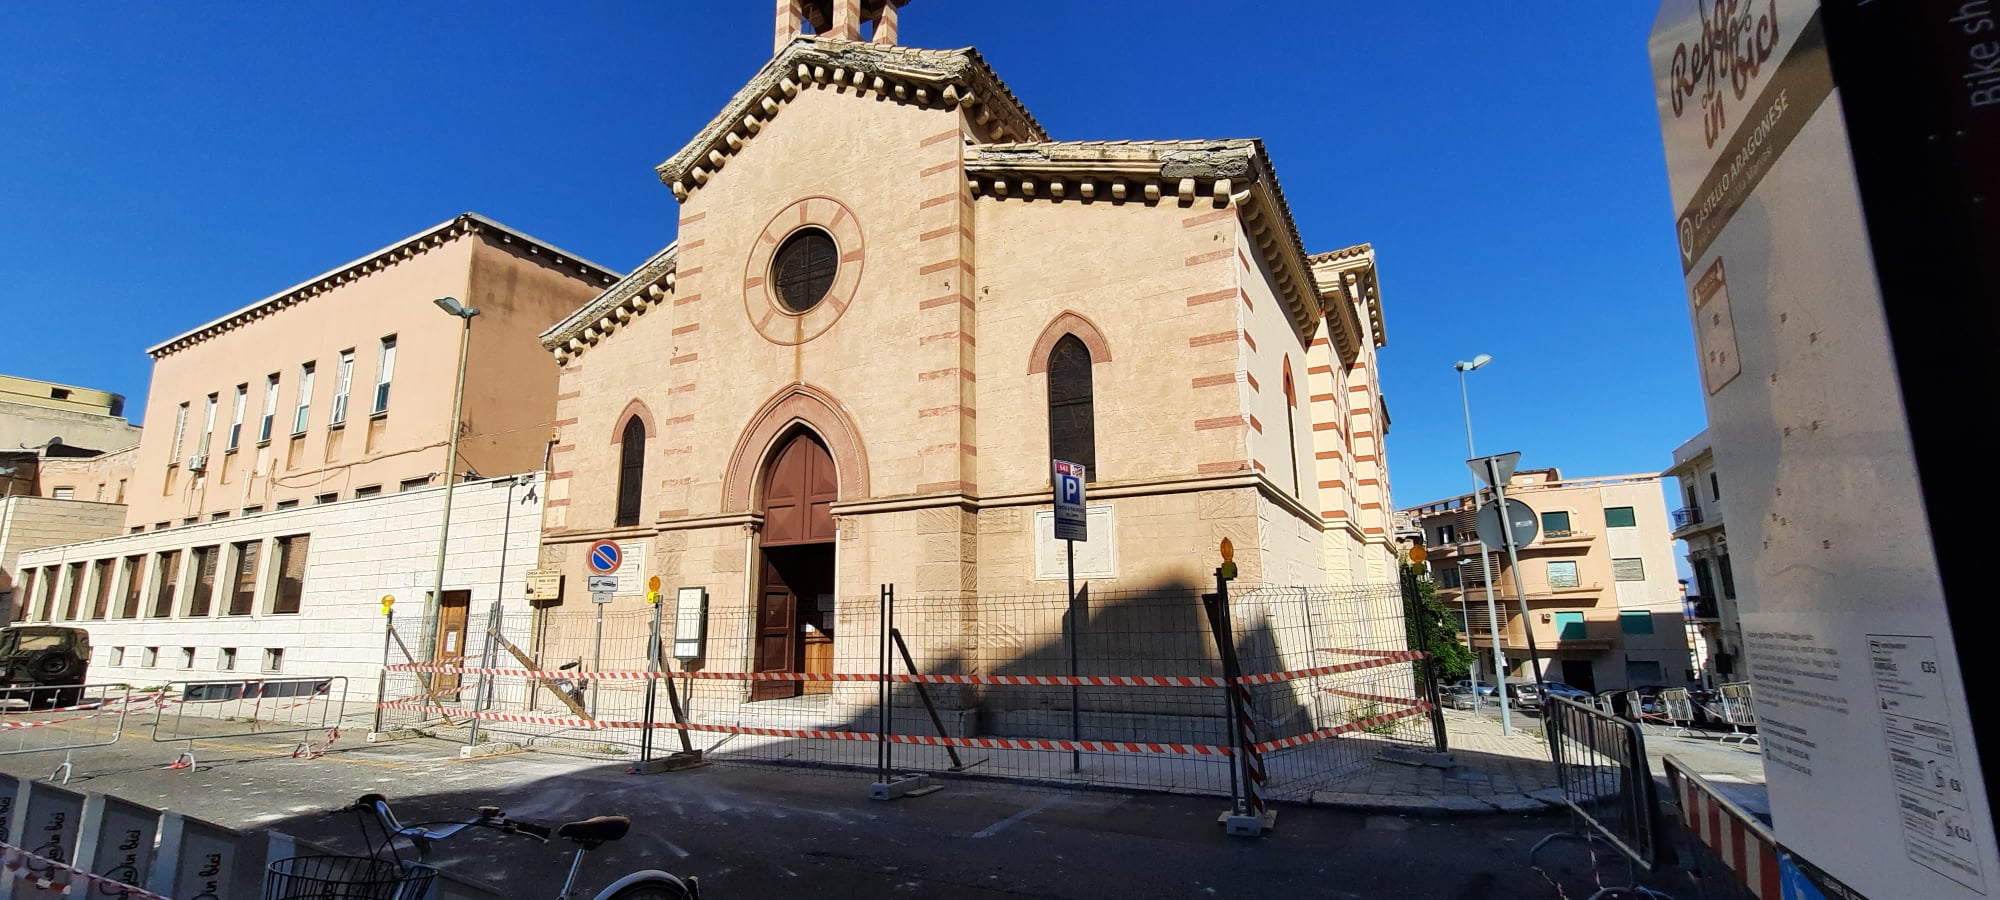 Reggio Calabria, Chiesa degli Ottimati: proseguono i lavori di restauro